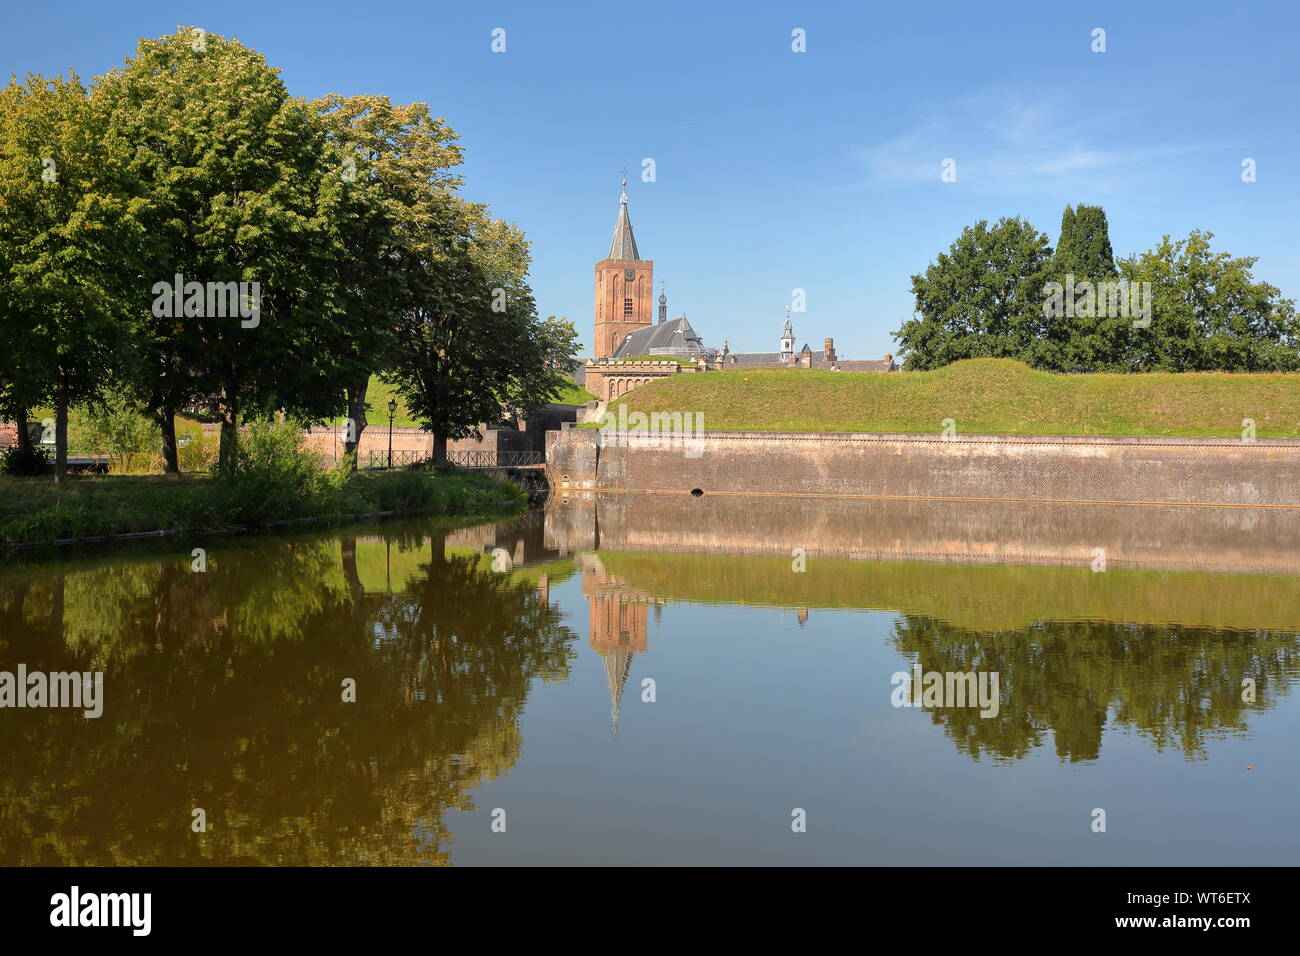 Las murallas y fosos de la ciudad de Naarden, Holanda, con la Grote Kerk iglesia en el fondo Foto de stock